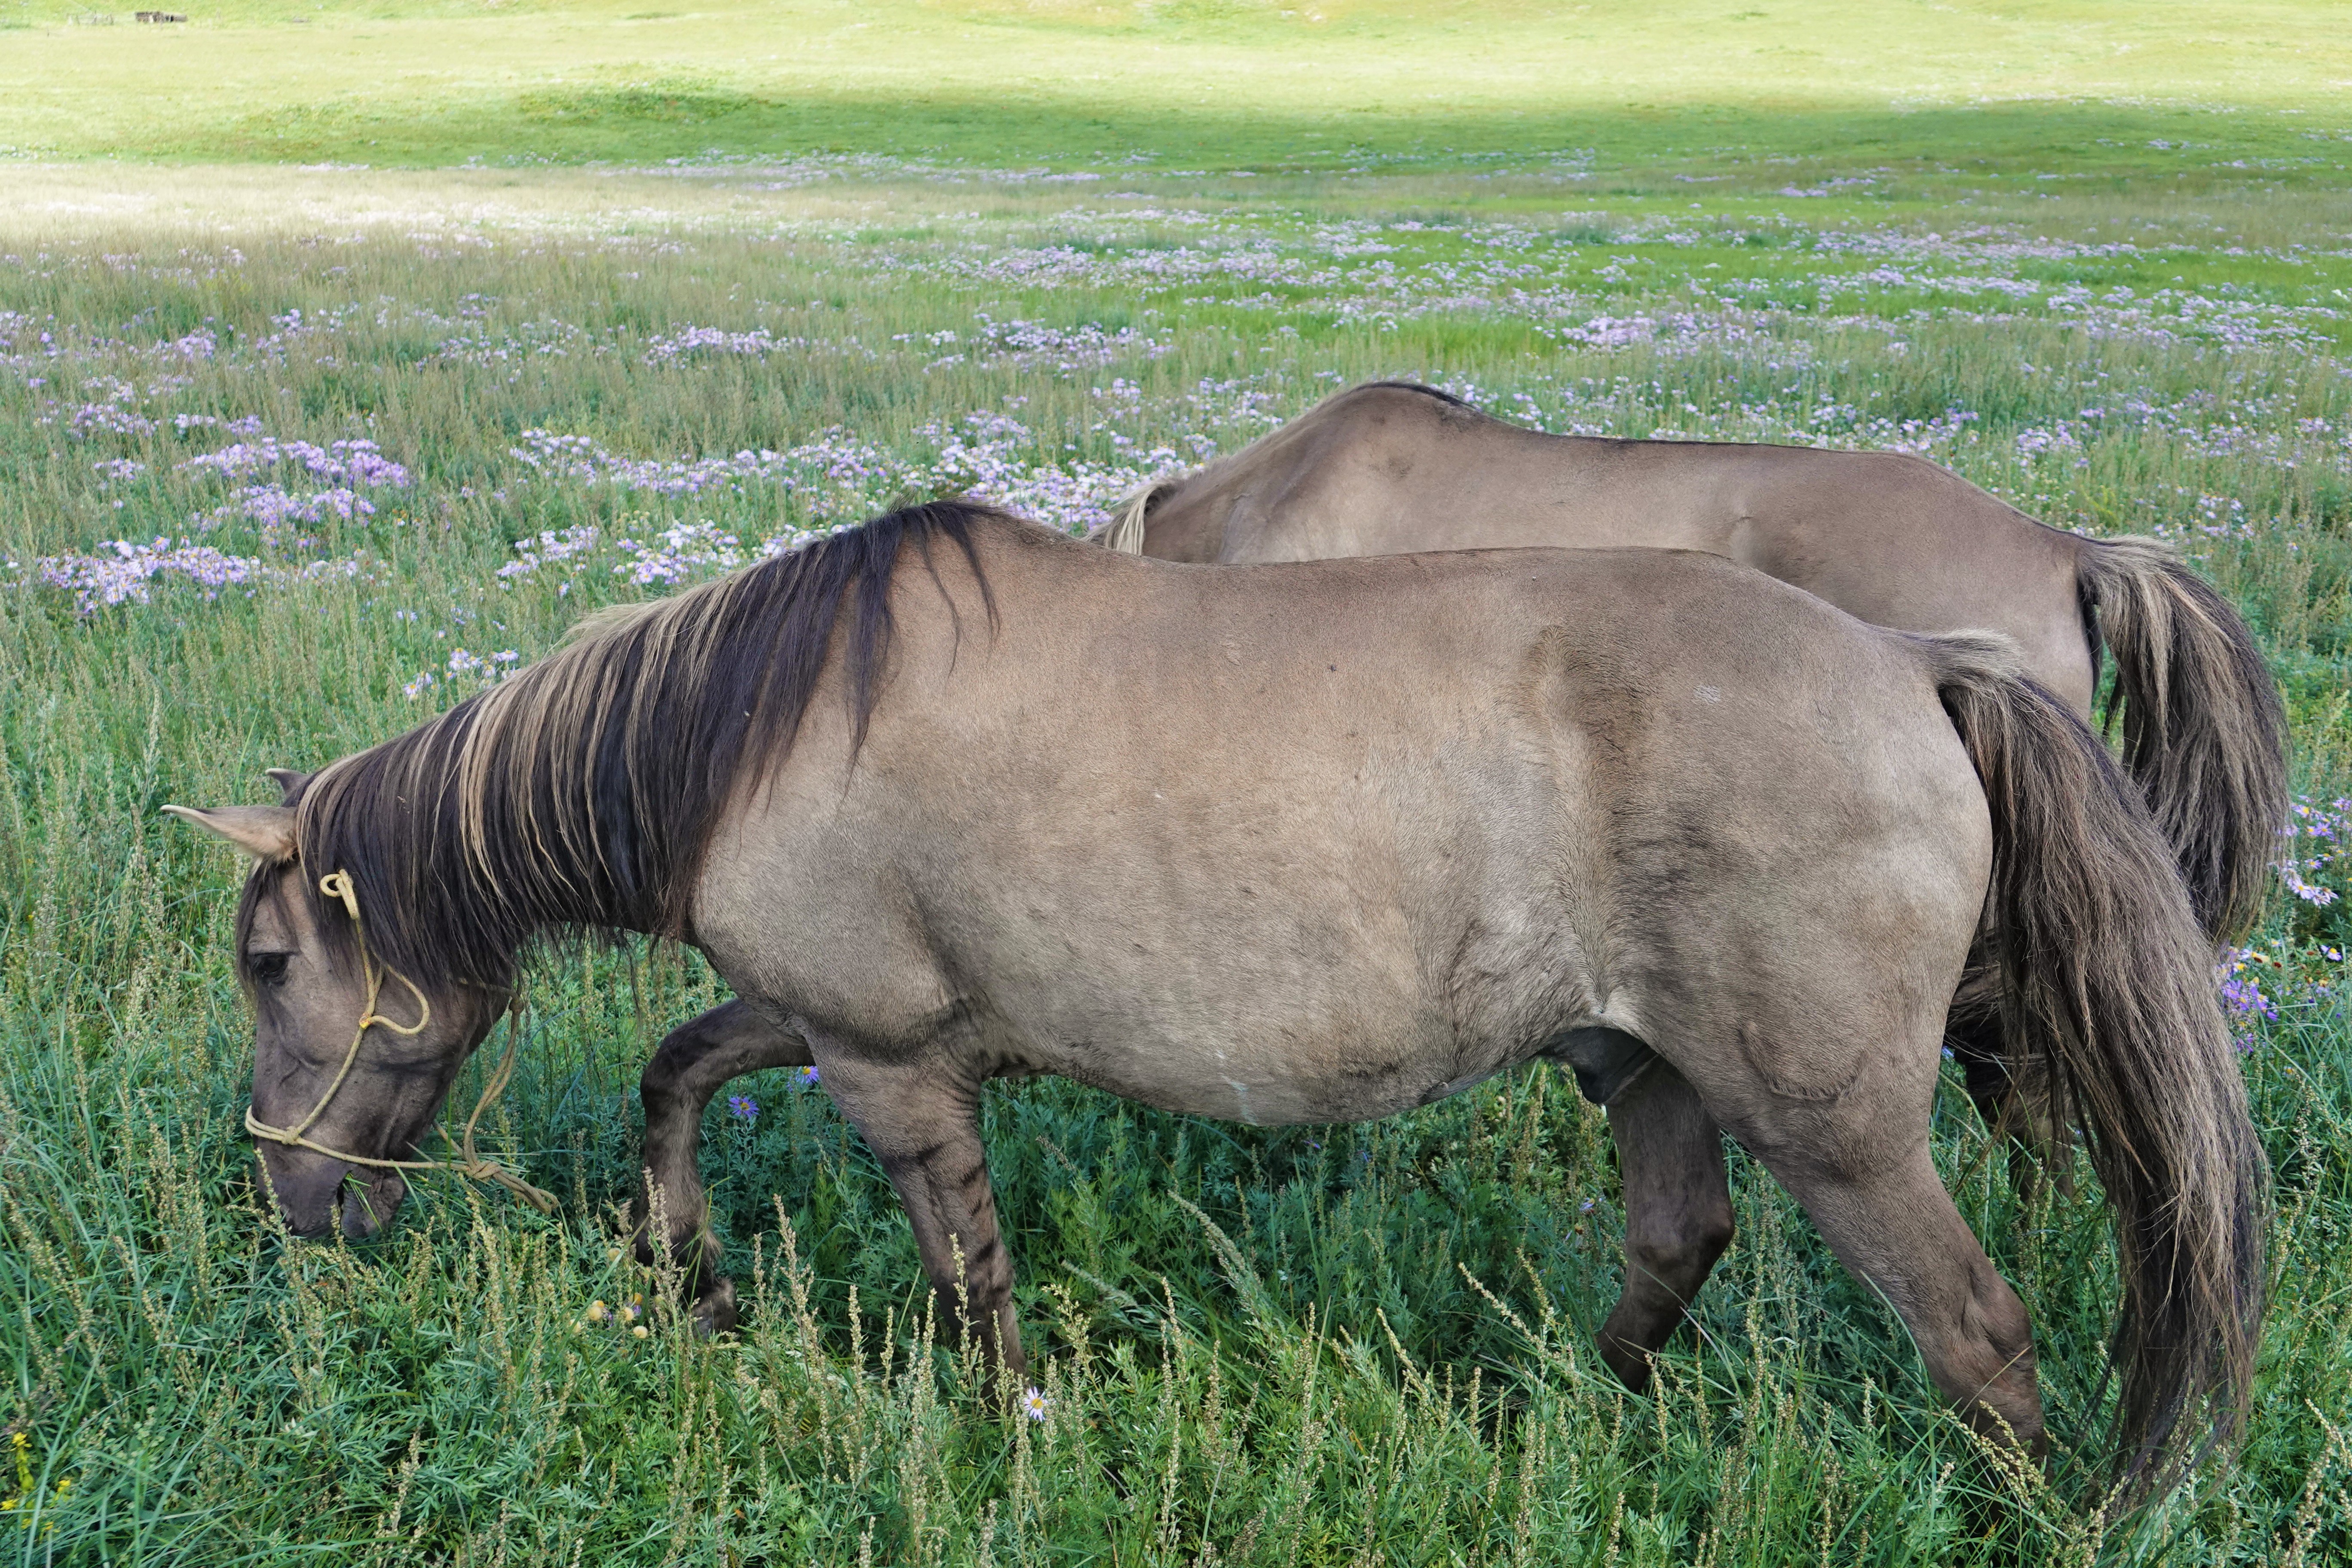 Mongolian horses, trekking horses, roaming free